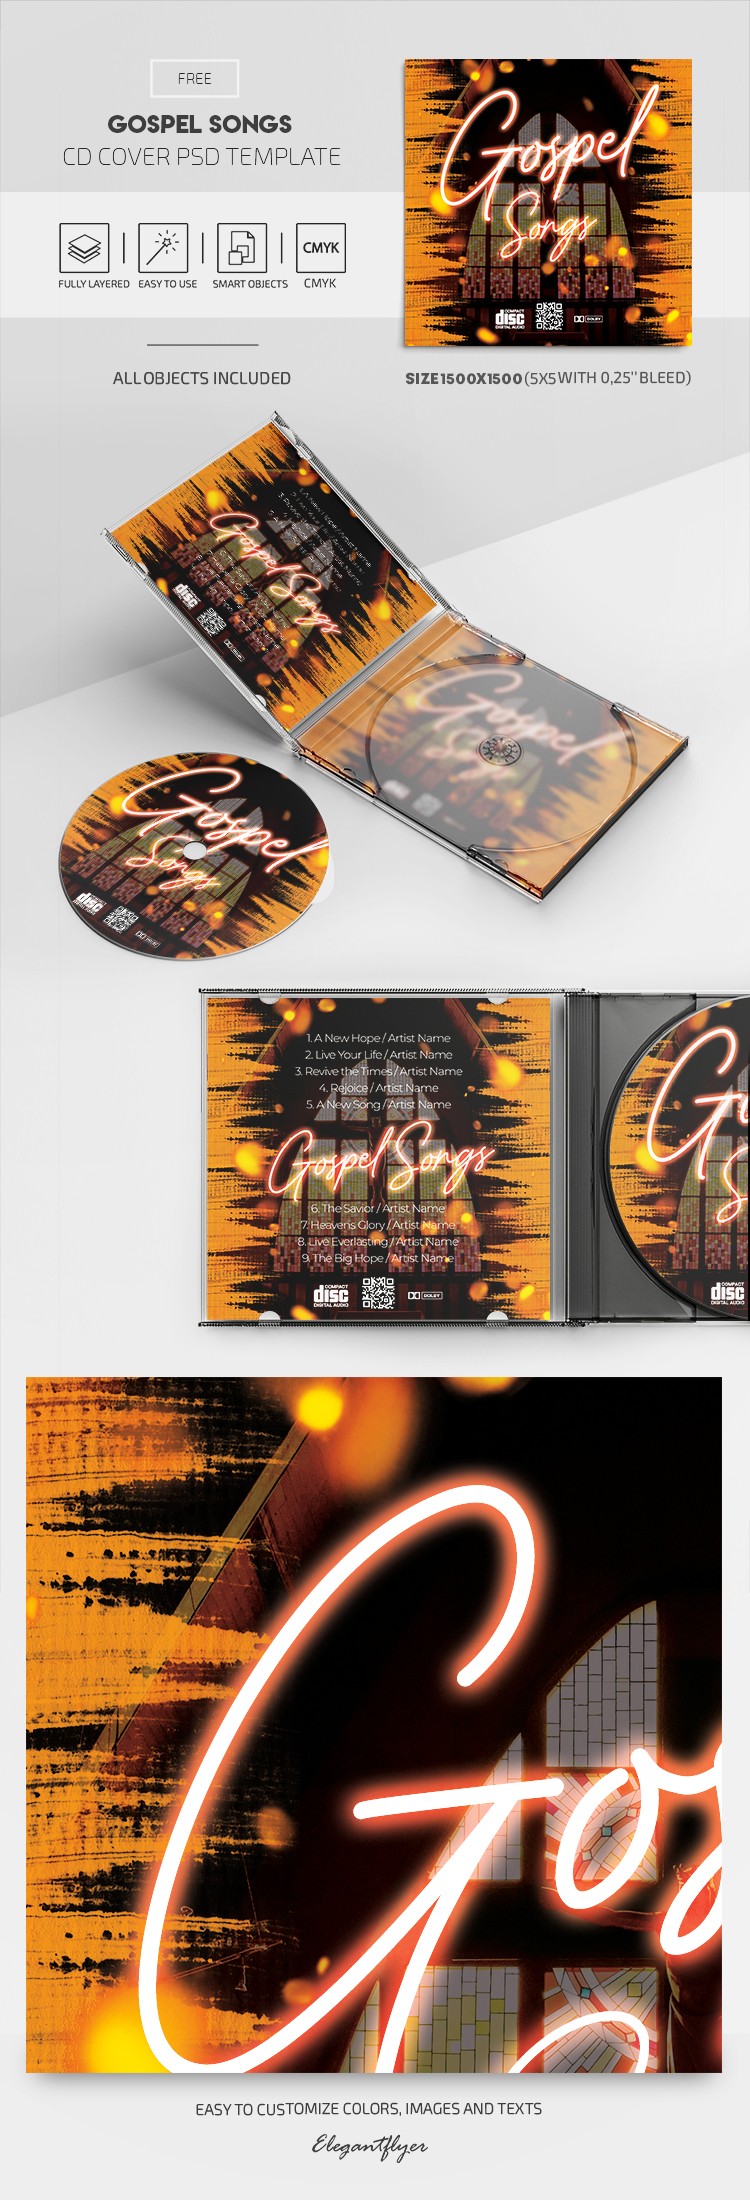 Gospel Songs CD Cover by ElegantFlyer